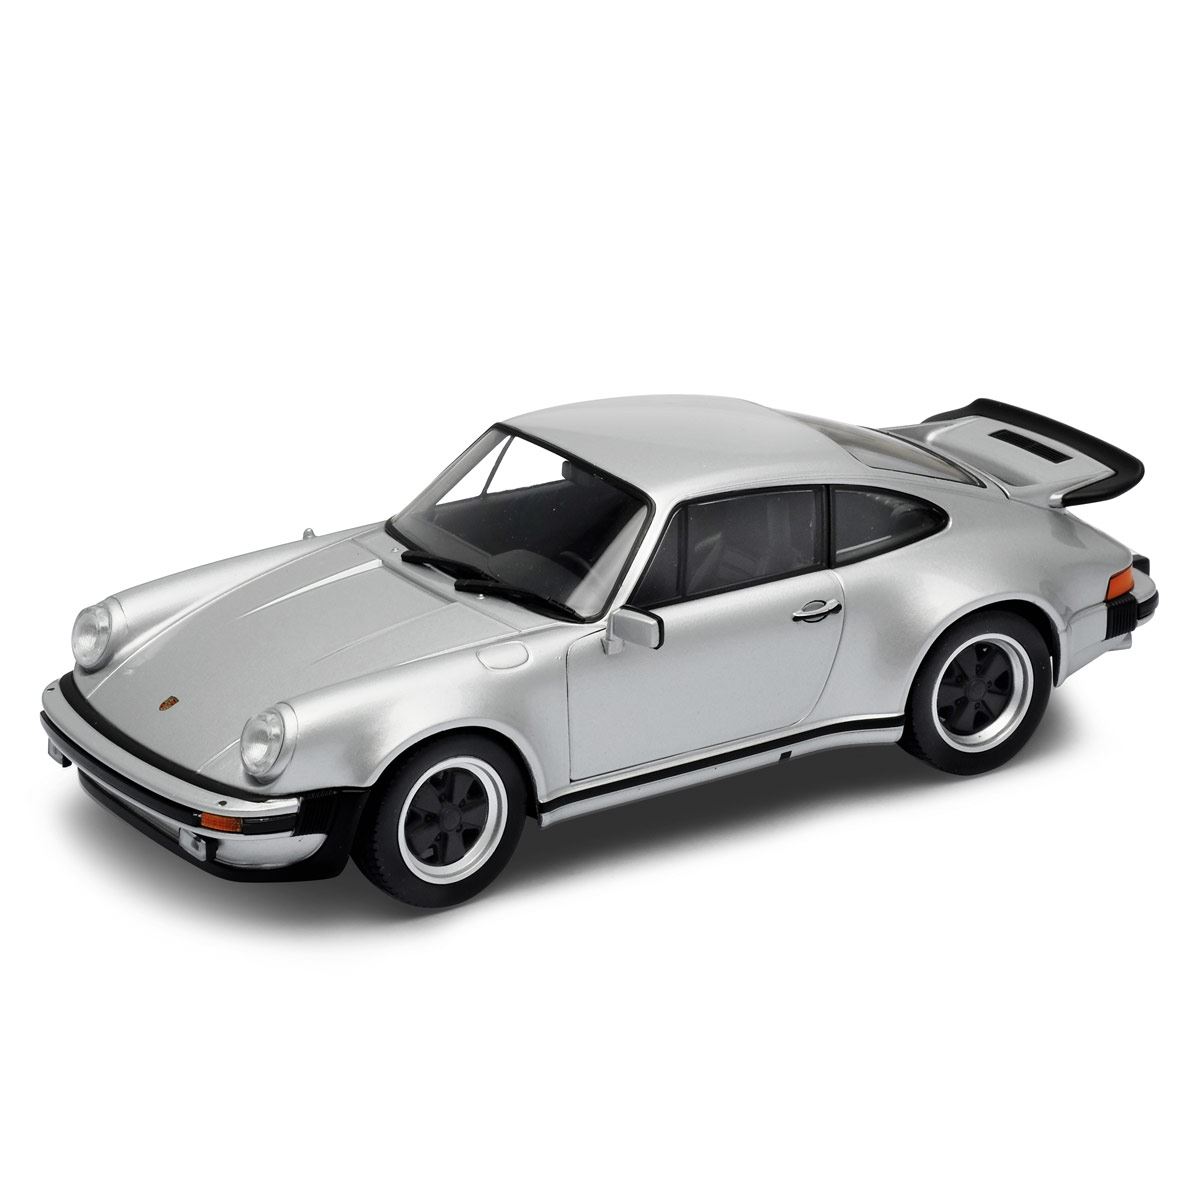 Escala 1:24 1974 Porsche 911 Turbo